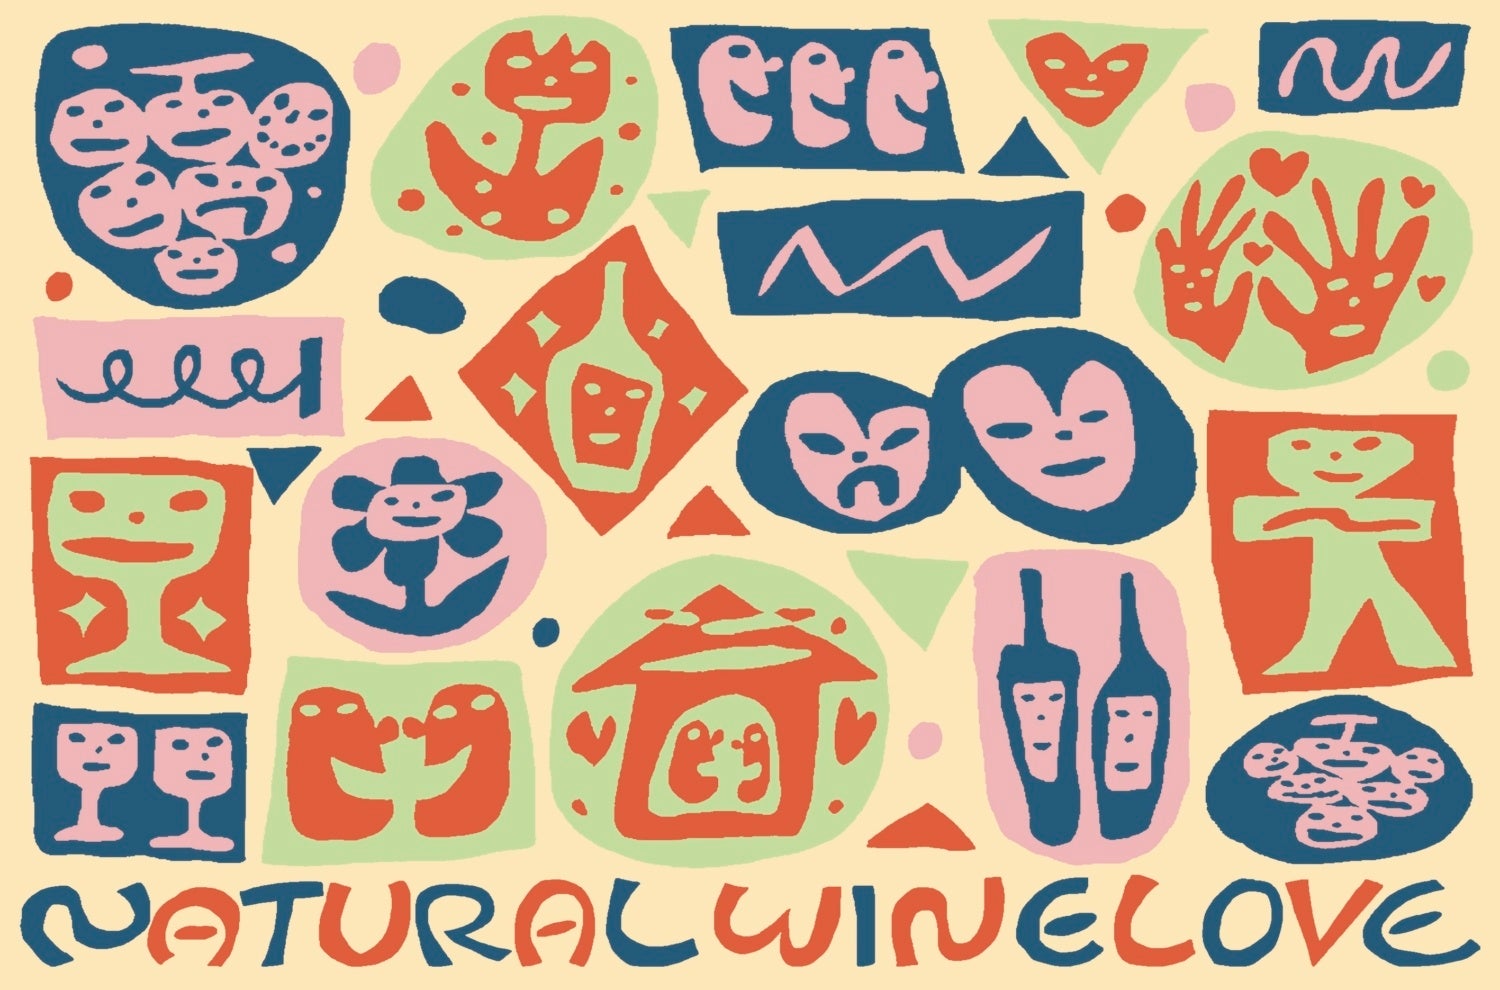 5/18&19『Natural Wine Love 〜ワインを愛する全ての人々とともに〜』をFarmers Marketで開催。